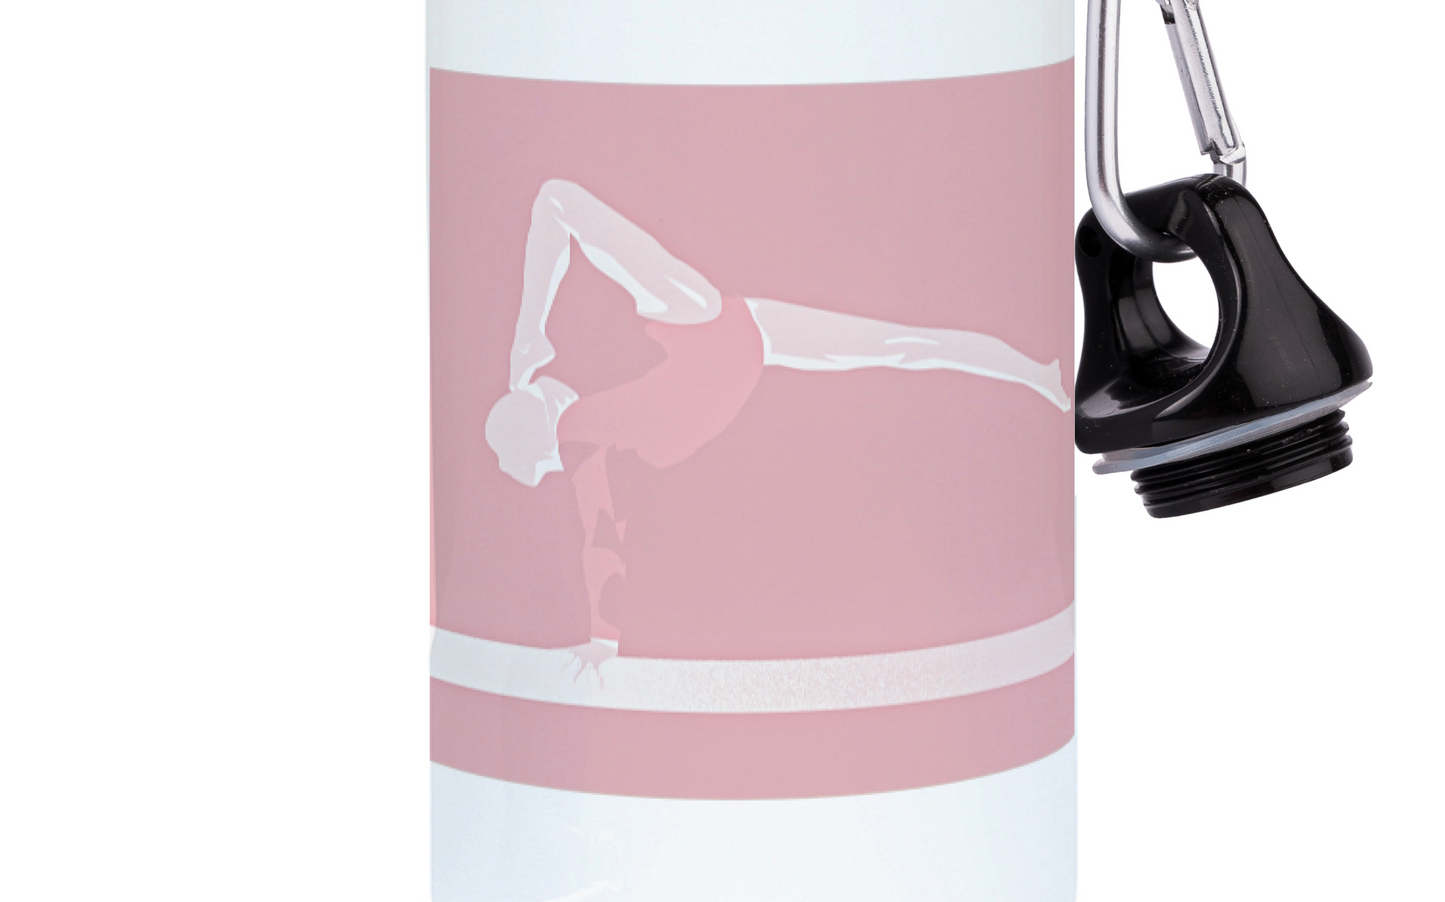 Gourde aluminium gymnastique rose "Latika la gymnaste" - Personnalisable